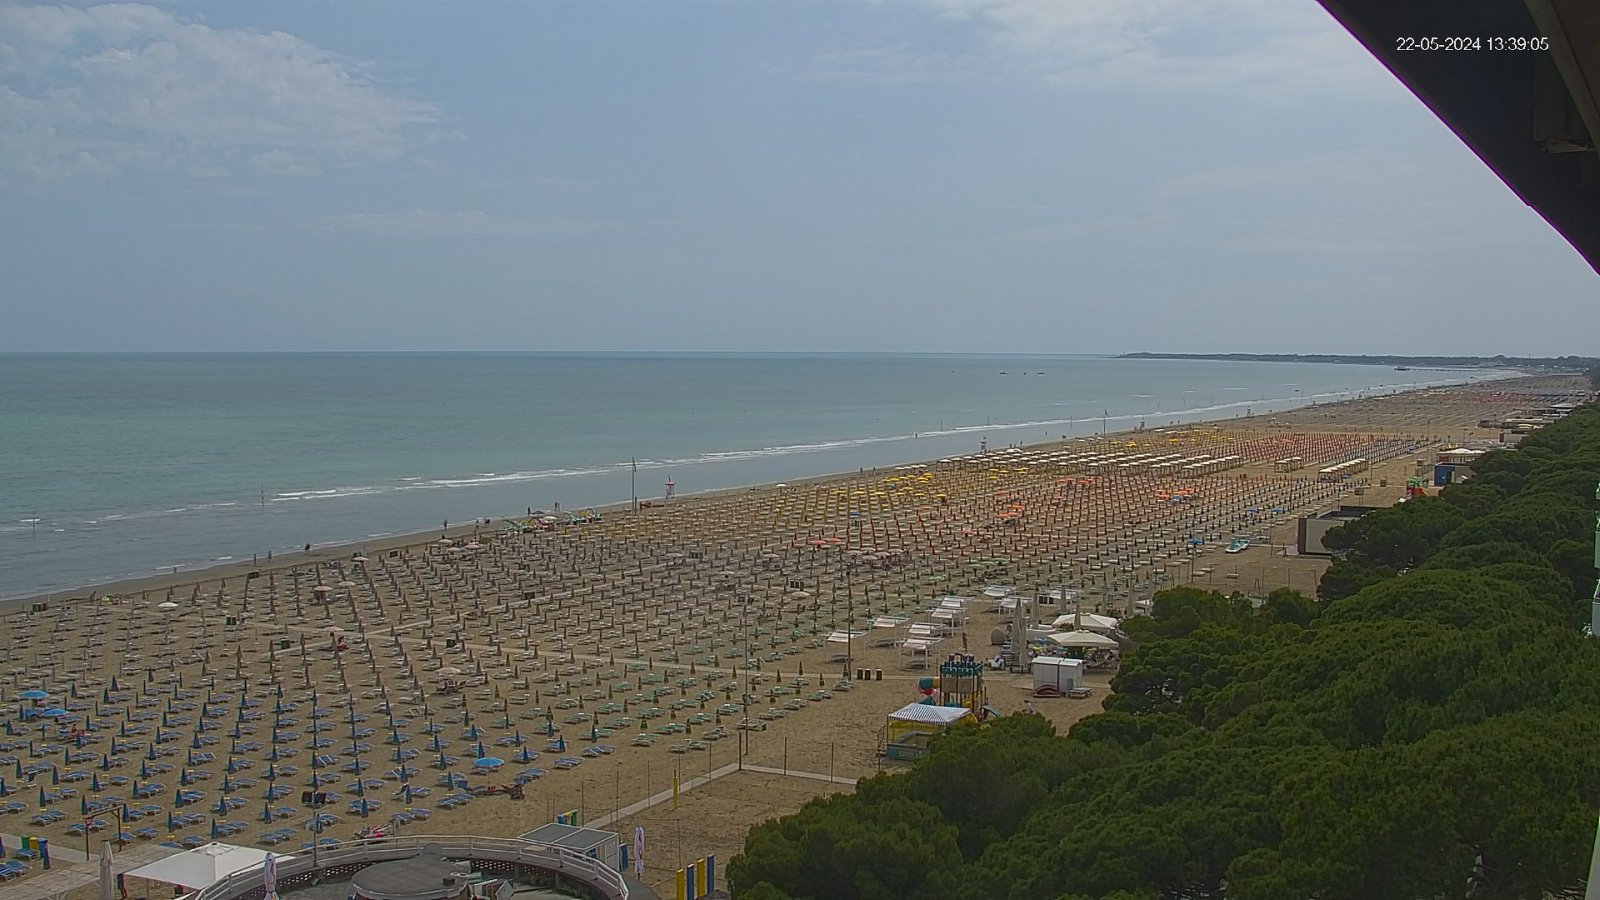 Webcam a Lignano Sabbiadoro con vista sulla spiaggia, la battigia e gazebo